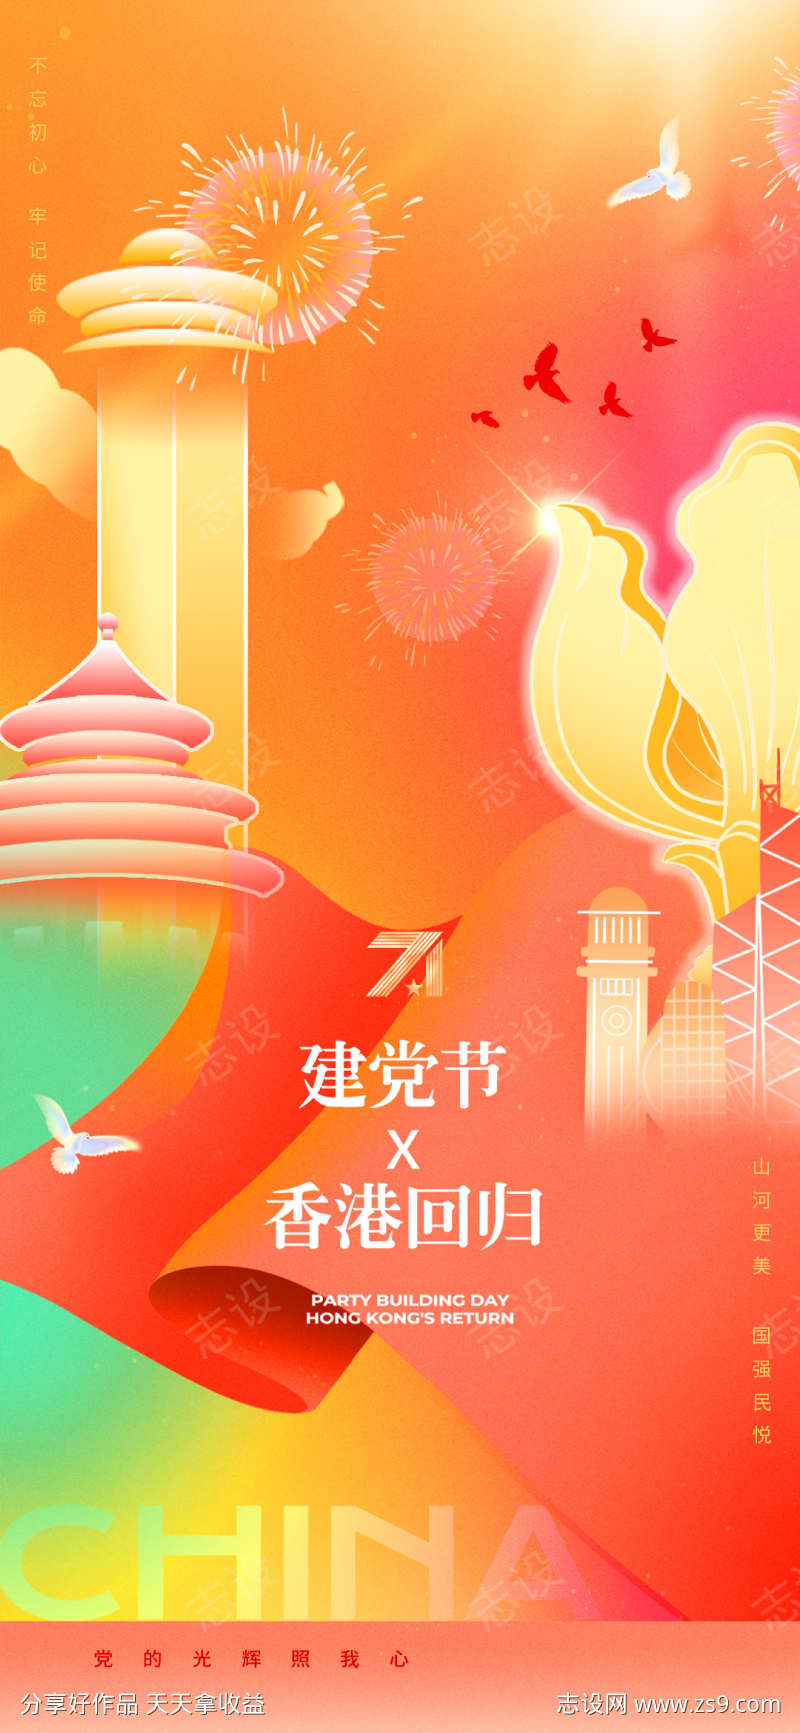 香港回归27周年纪念日海报